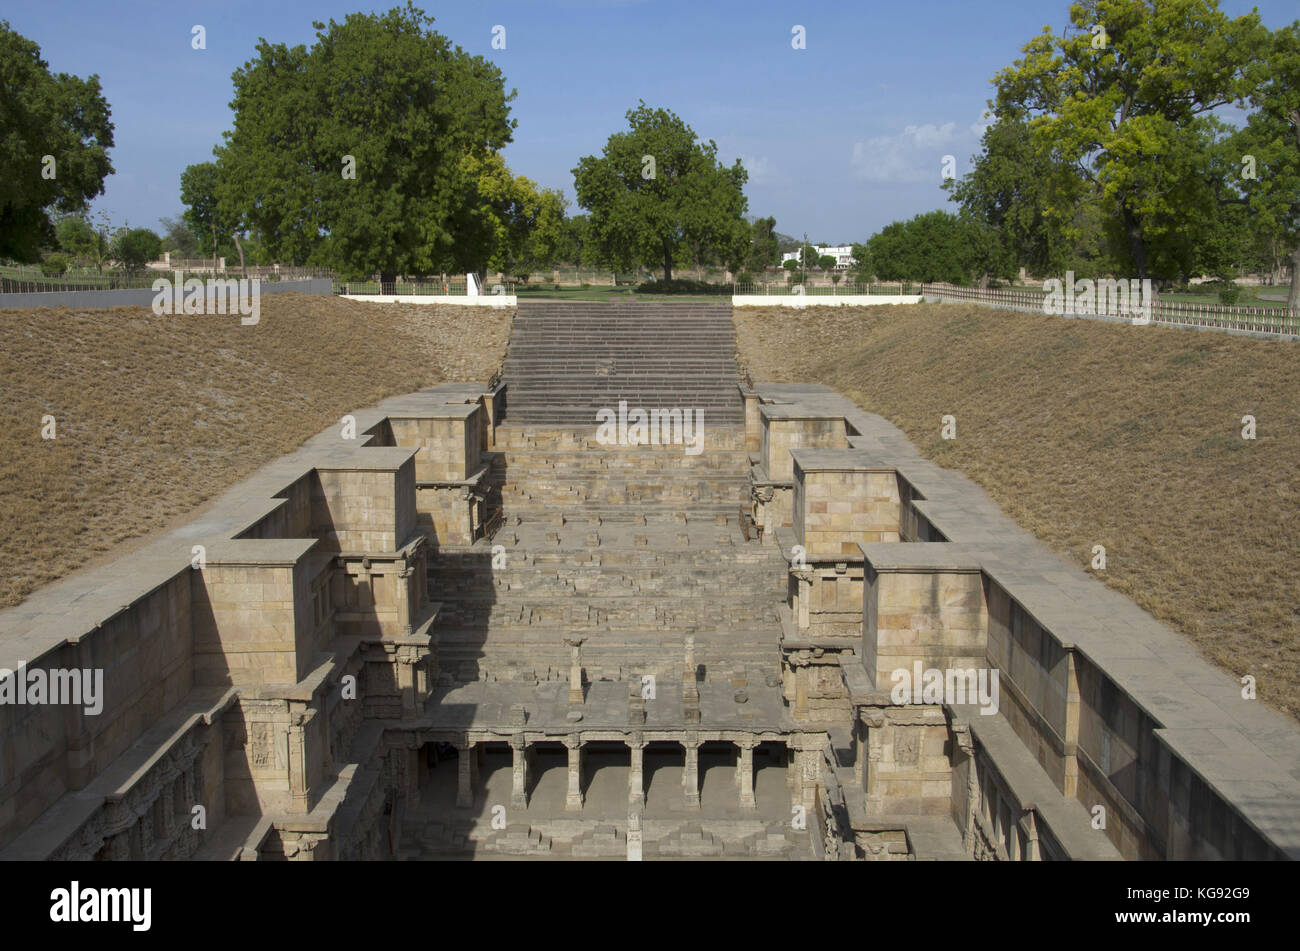 Vue extérieure de Rani ki Vav, une cage construite de façon complexe sur les rives de la rivière Saraswati. Mémorial à un 11e siècle annonce Roi Bhimdev I. Banque D'Images